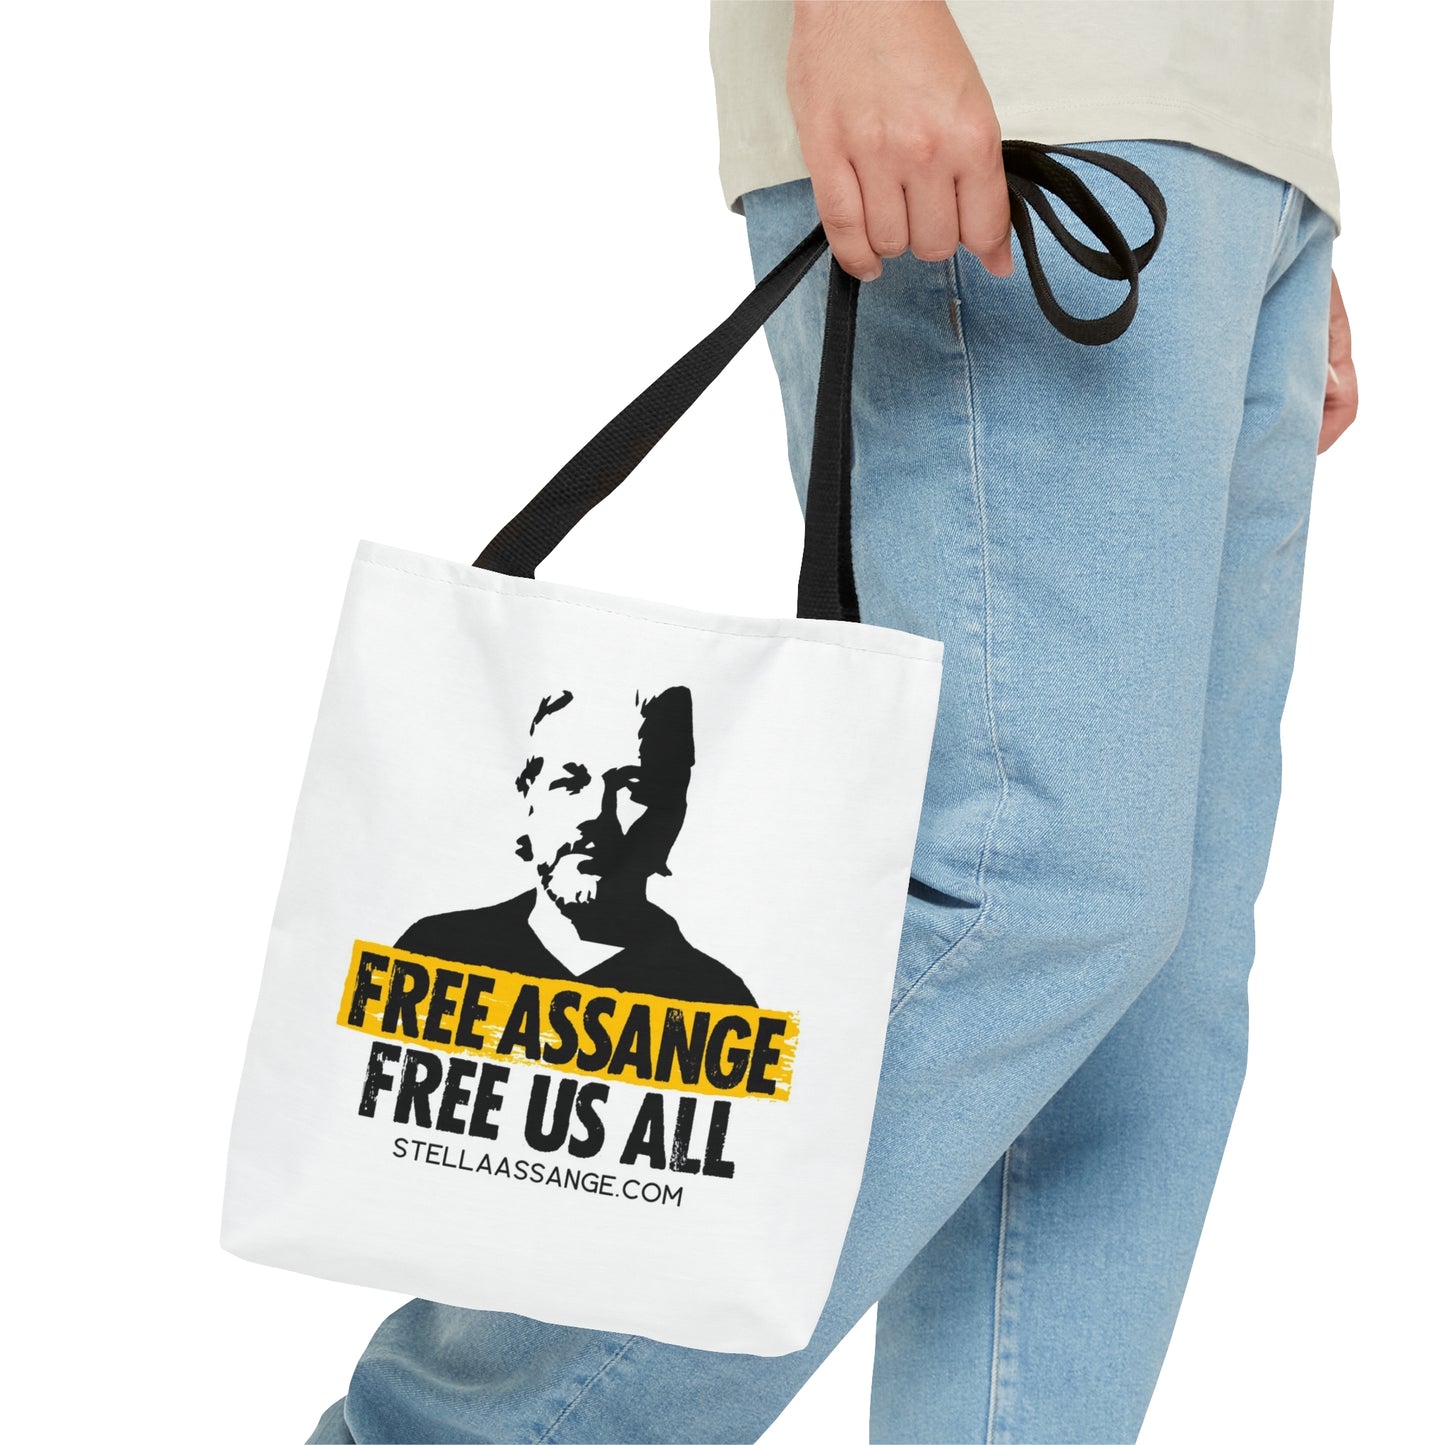 (UK) "Free Assange, Free Us All" Tote Bag